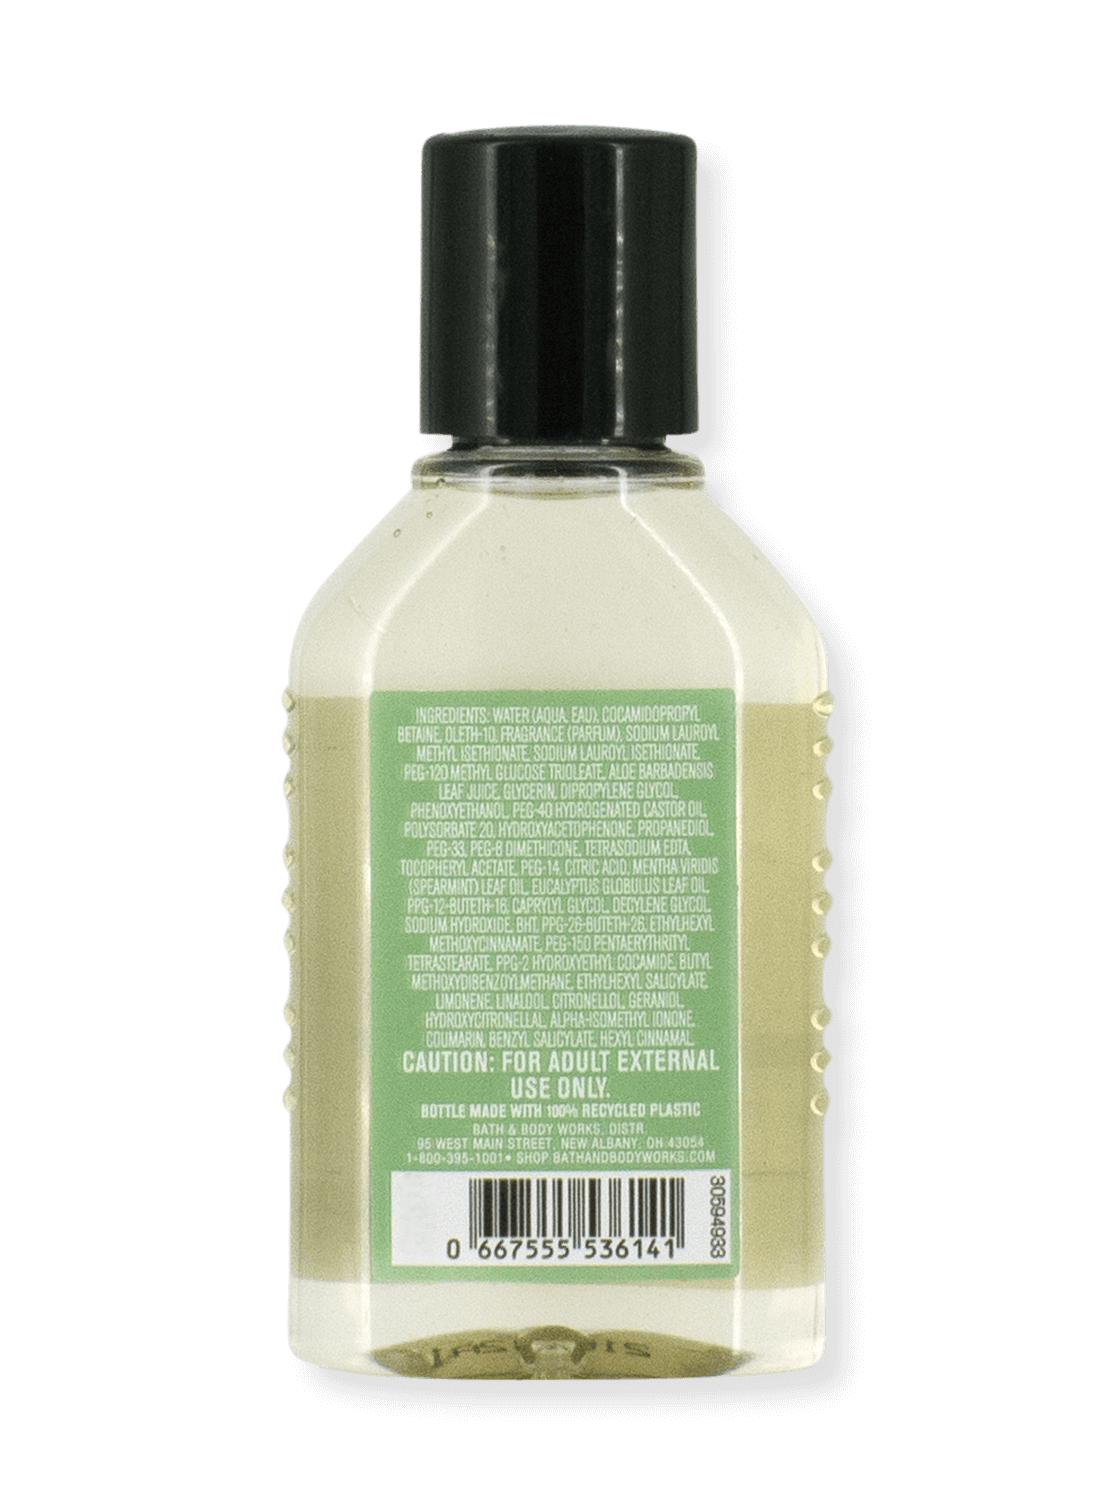 Vente - Gel de douche - aromathérapie - Soulagement du stress - Eucalyptus et lance-lance (taille du voyage) - 59 ml